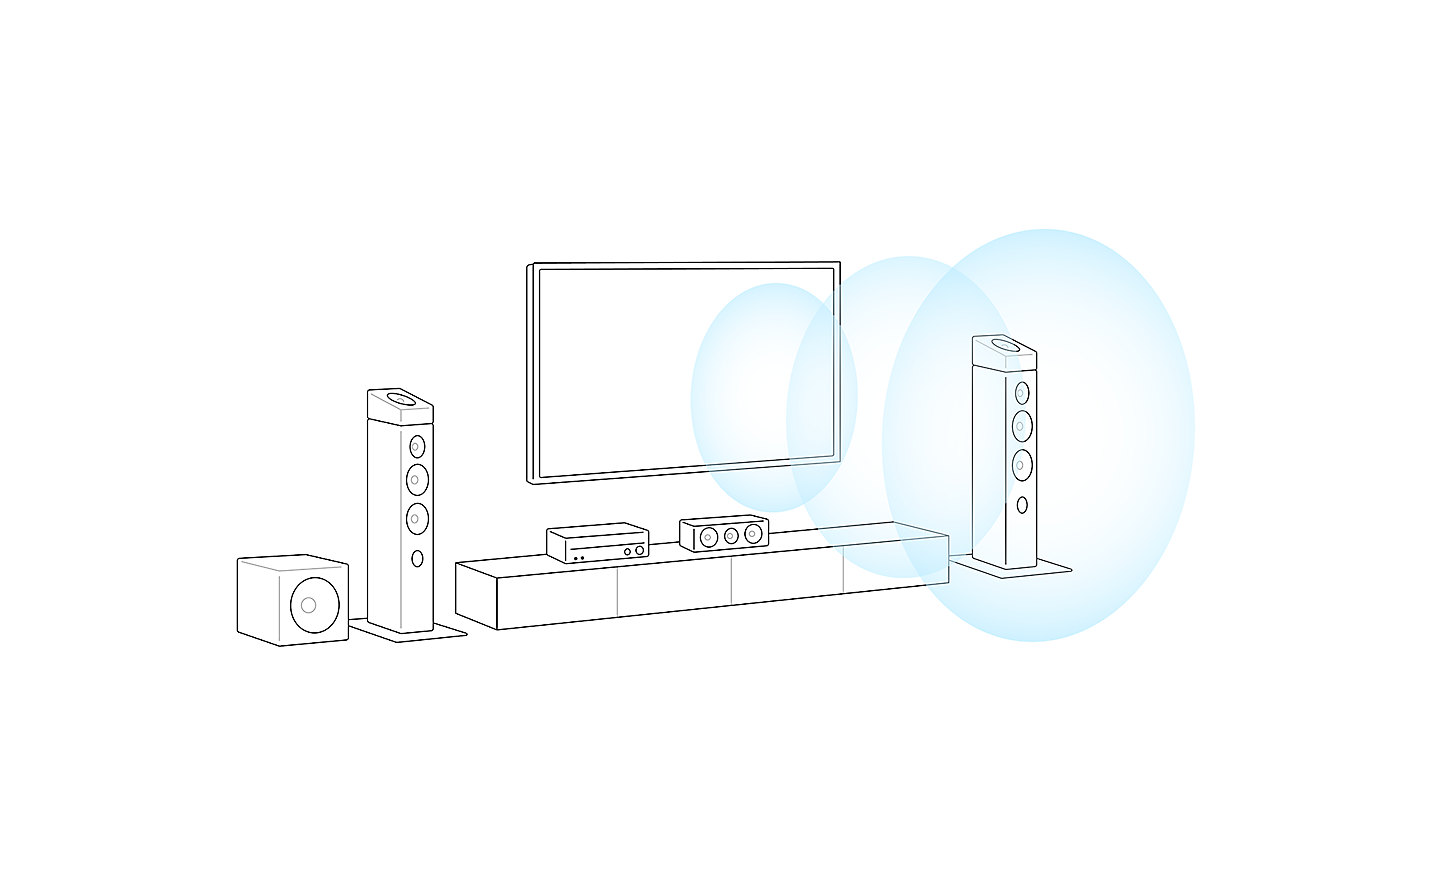 Nákres zostavenia televízora. 3 modré kruhy vychádzajú zo stredu televízora a predstavujú smer zvuku